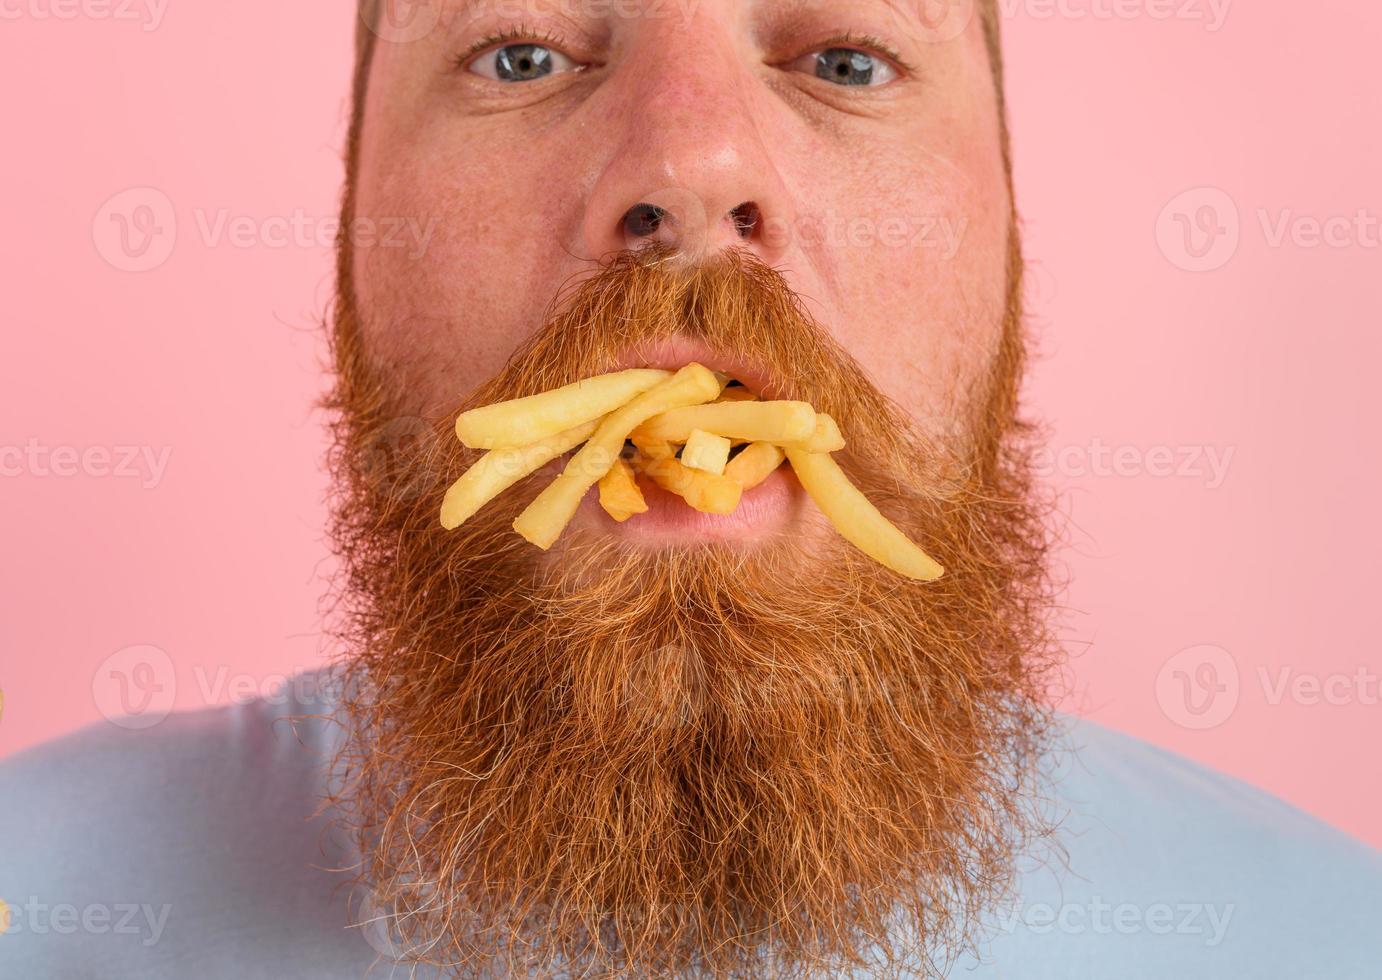 hungrig Mann mit Bart und Tätowierungen isst gebraten Kartoffeln foto